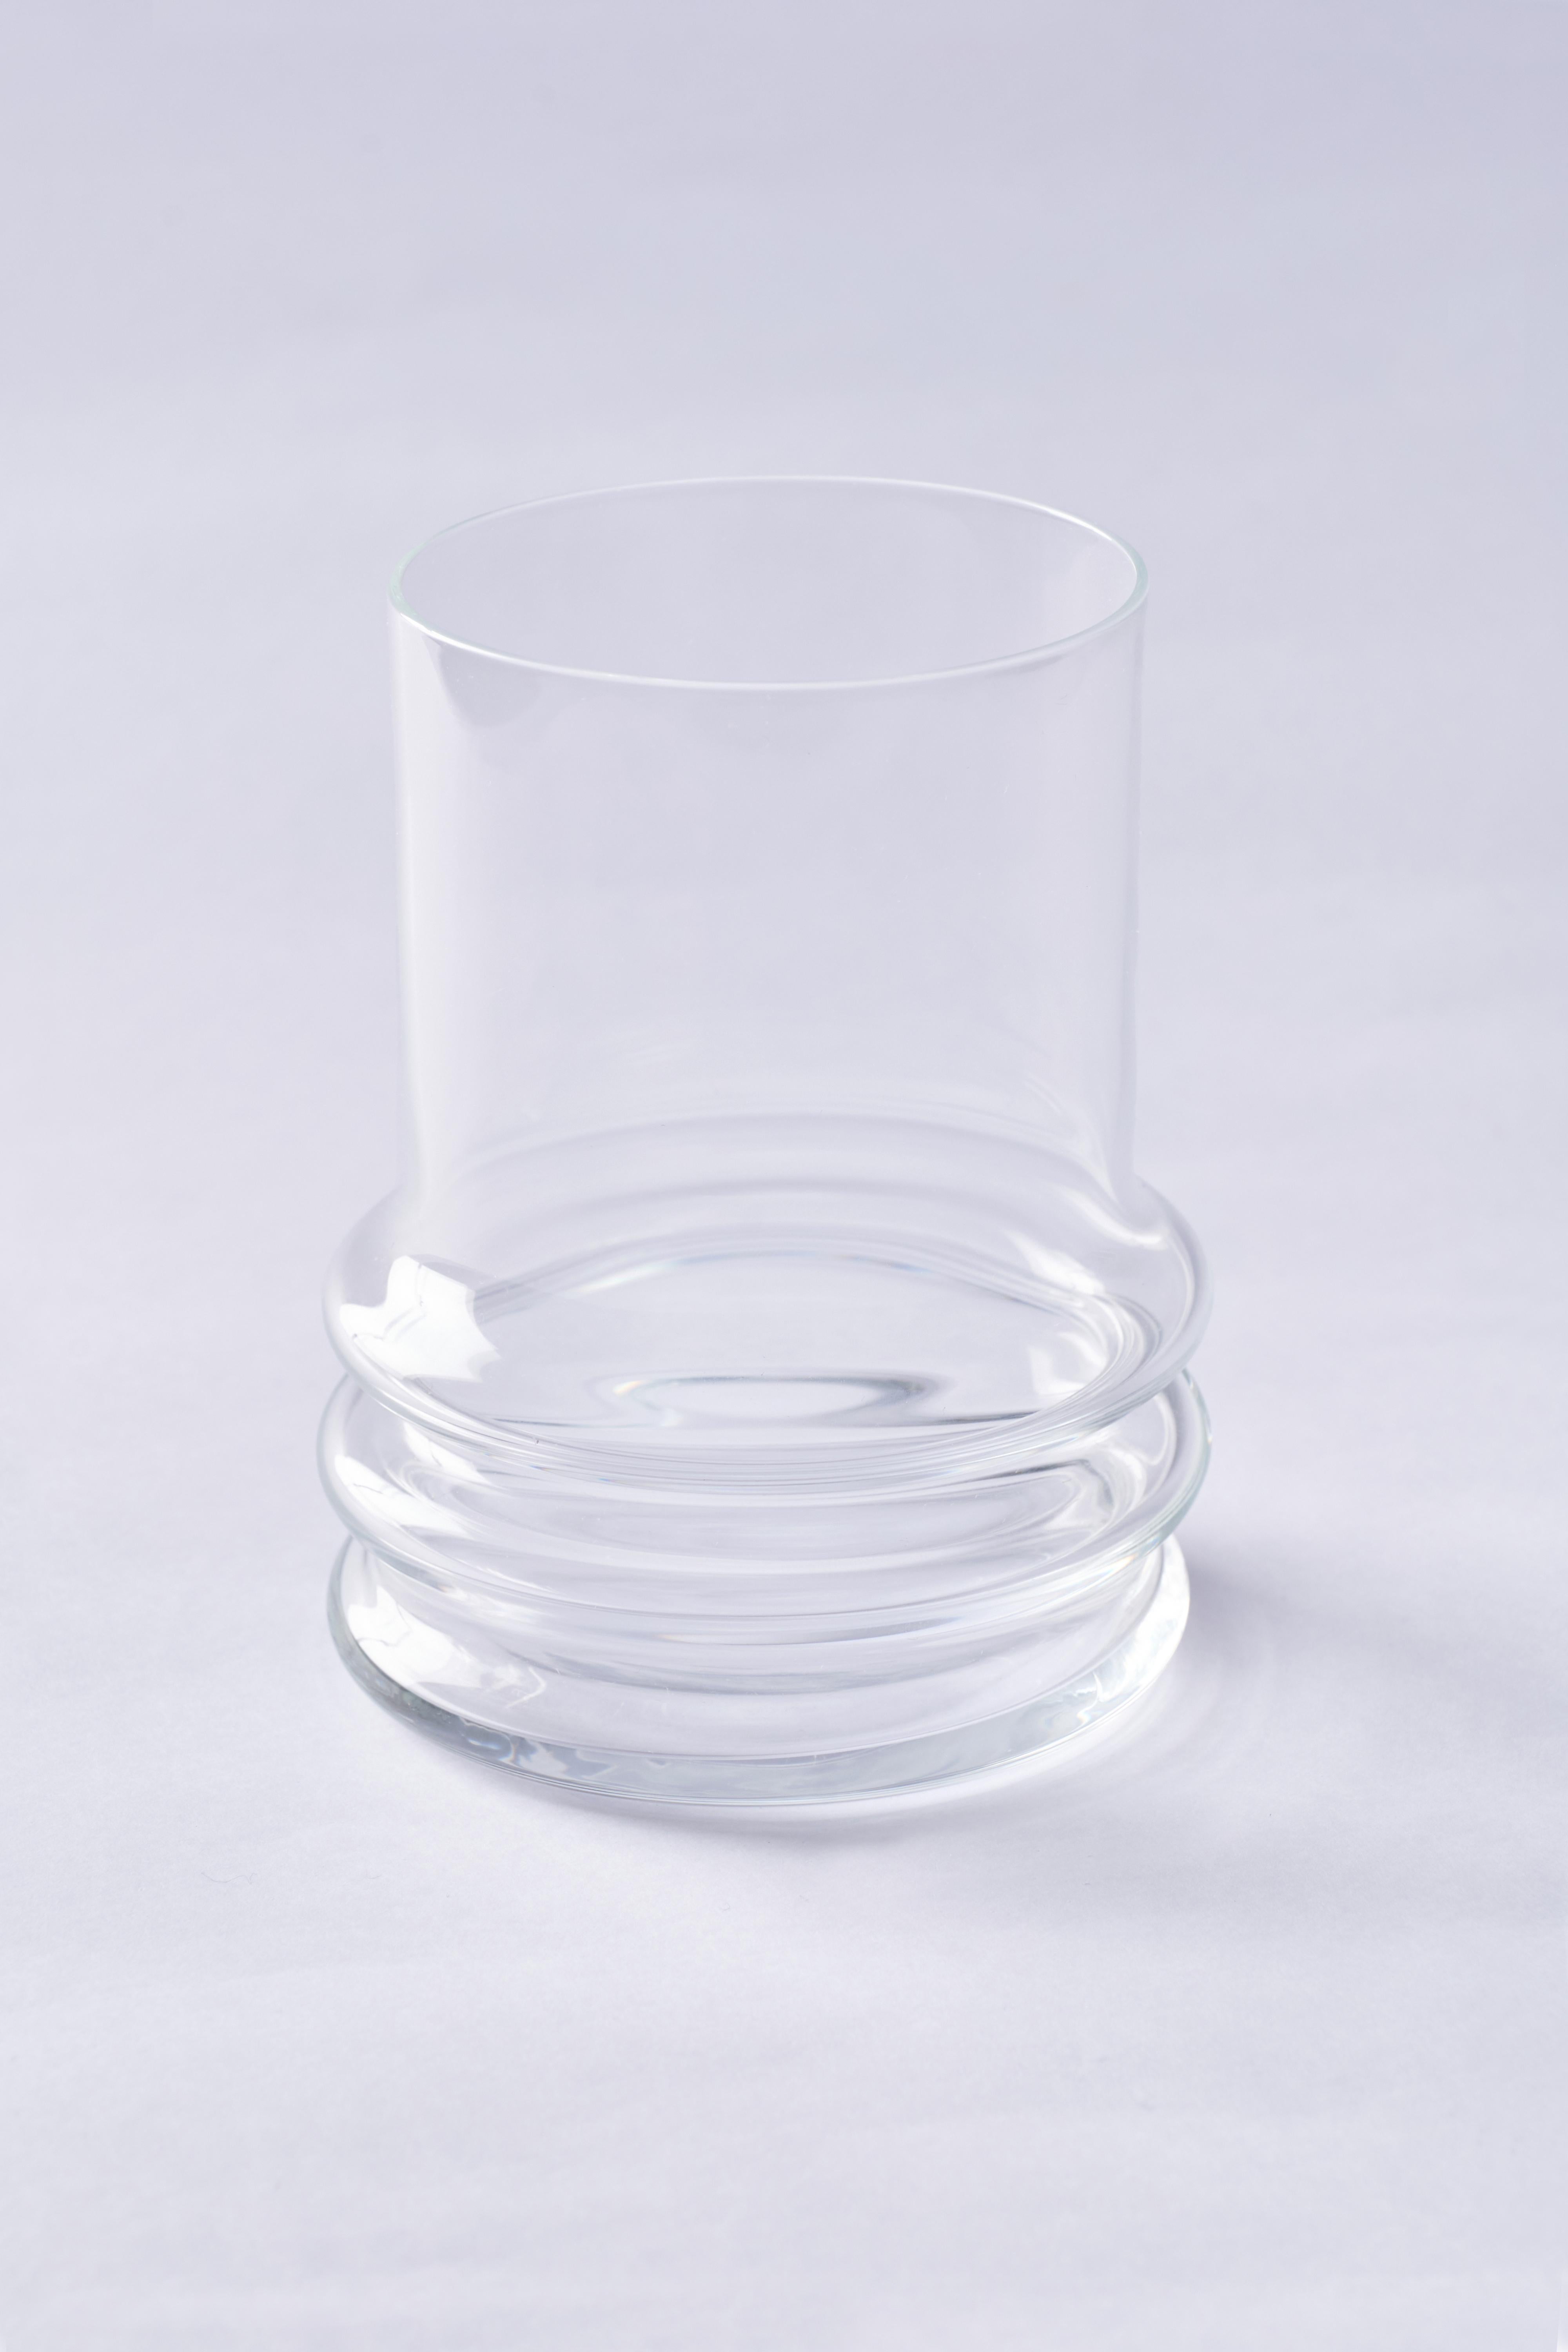 Le cristal, comme le verre, présente une caractéristique très intéressante dans laquelle sa composition et son comportement peuvent être catalogués à la fois comme solide et liquide. C'est ce qu'on appelle 